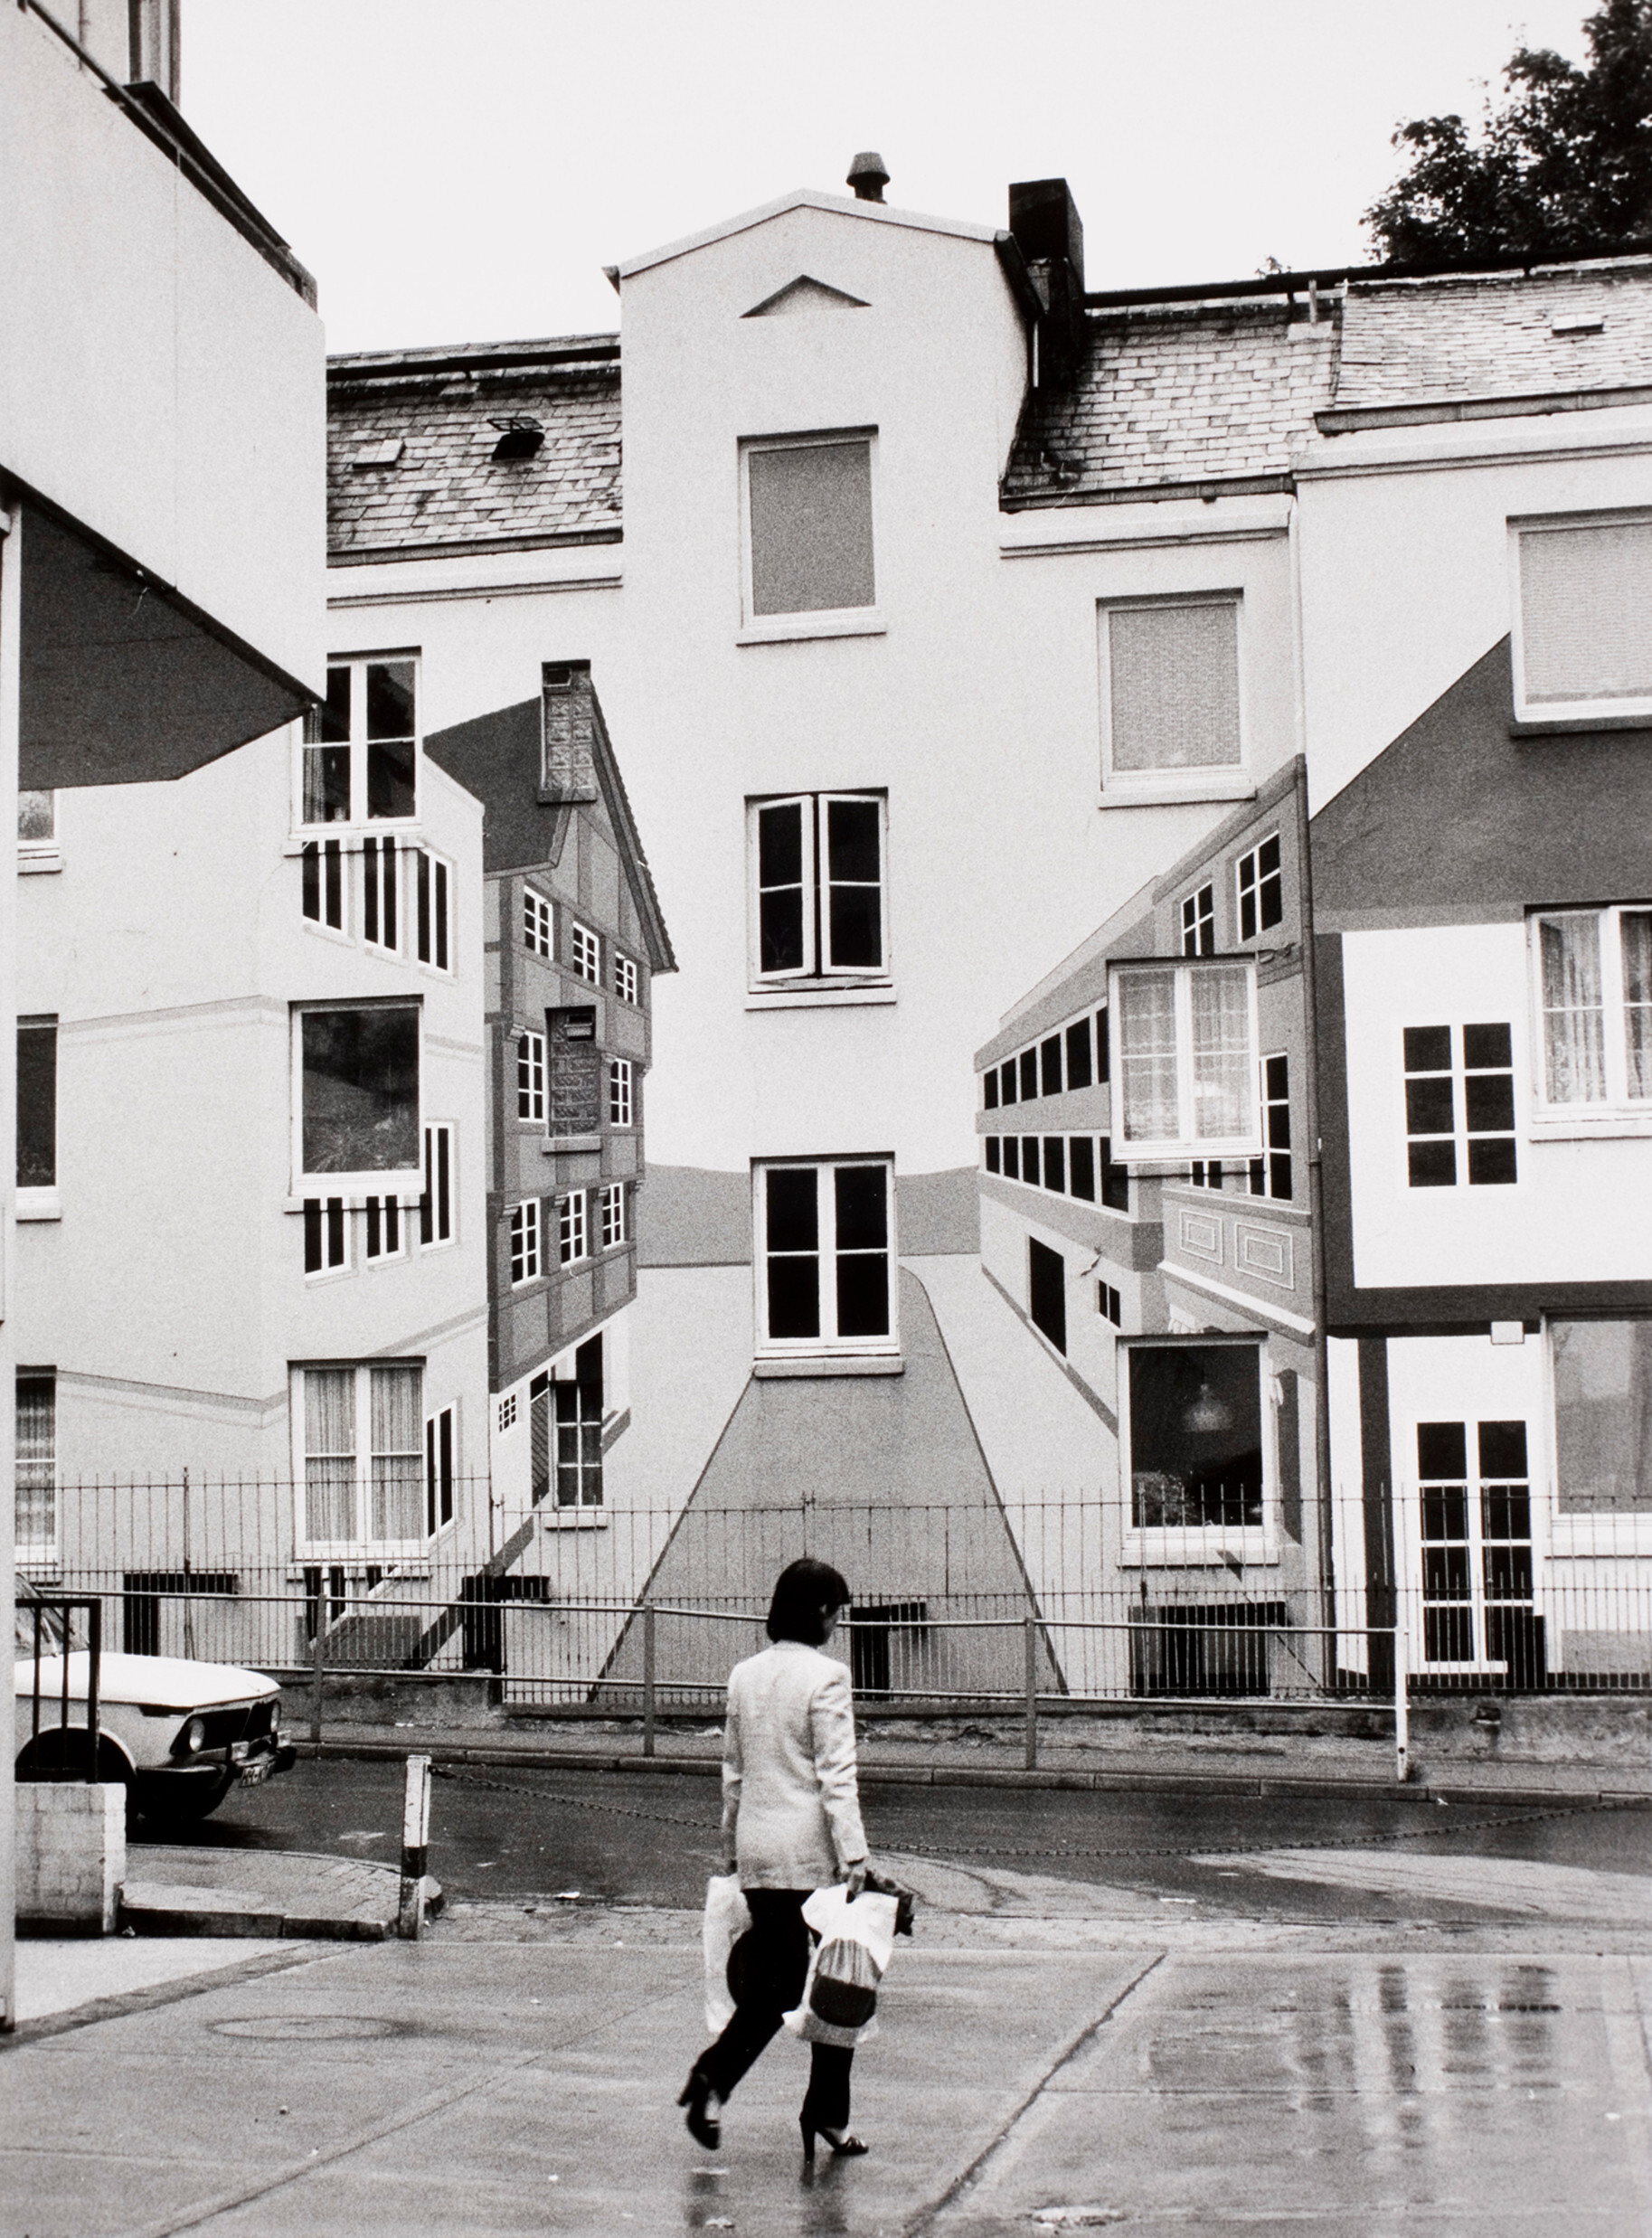 Здание с обманкой, Позельдорф, Гамбург, 1979 год. Фотограф Альфред Эйзенштадт